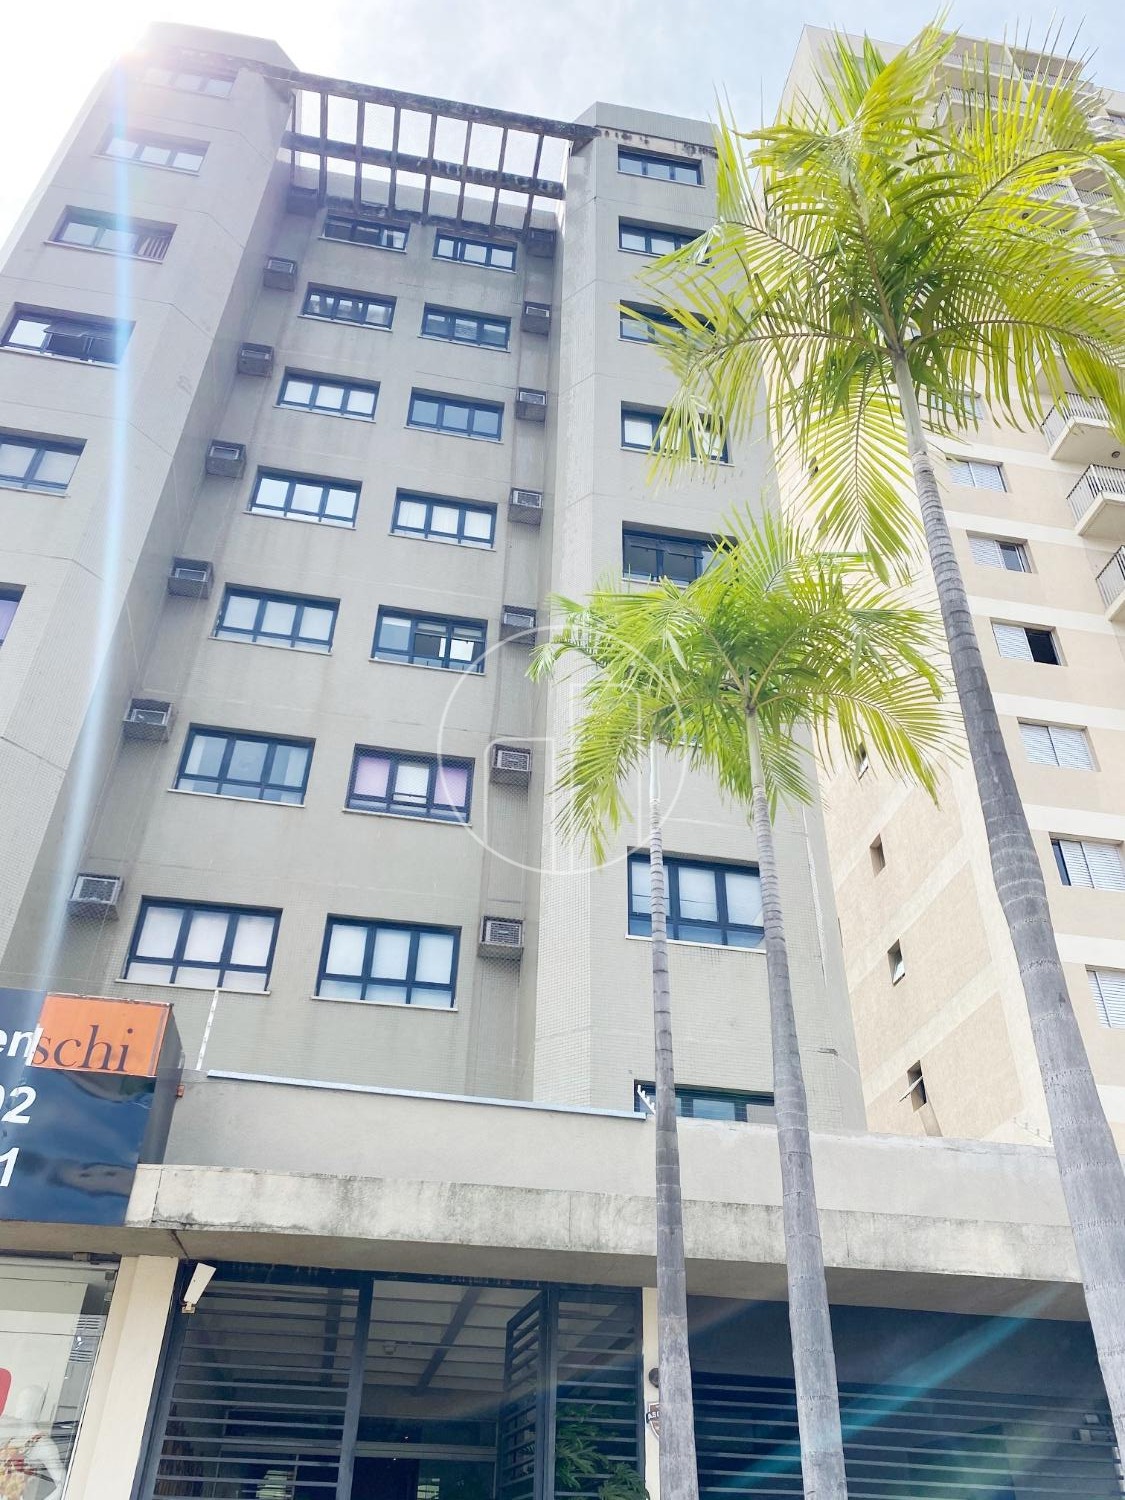 Piccoloto -Salão à venda no Jardim Guanabara em Campinas